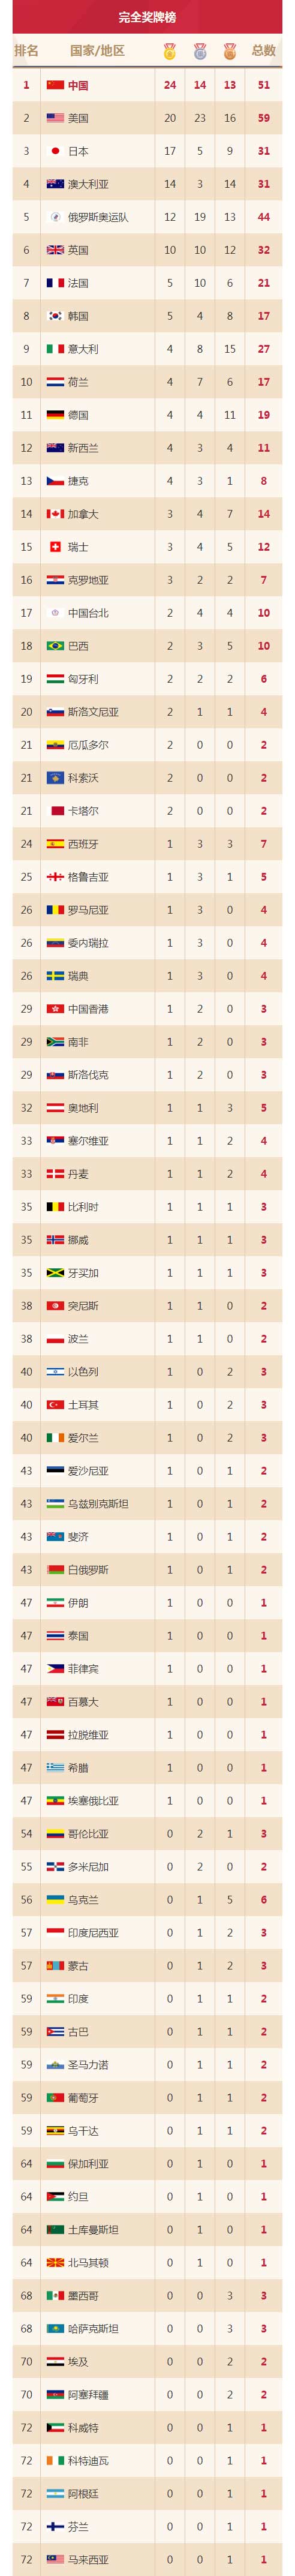 2012奥运会奖牌榜排名_2012 奥运会奖牌榜排名